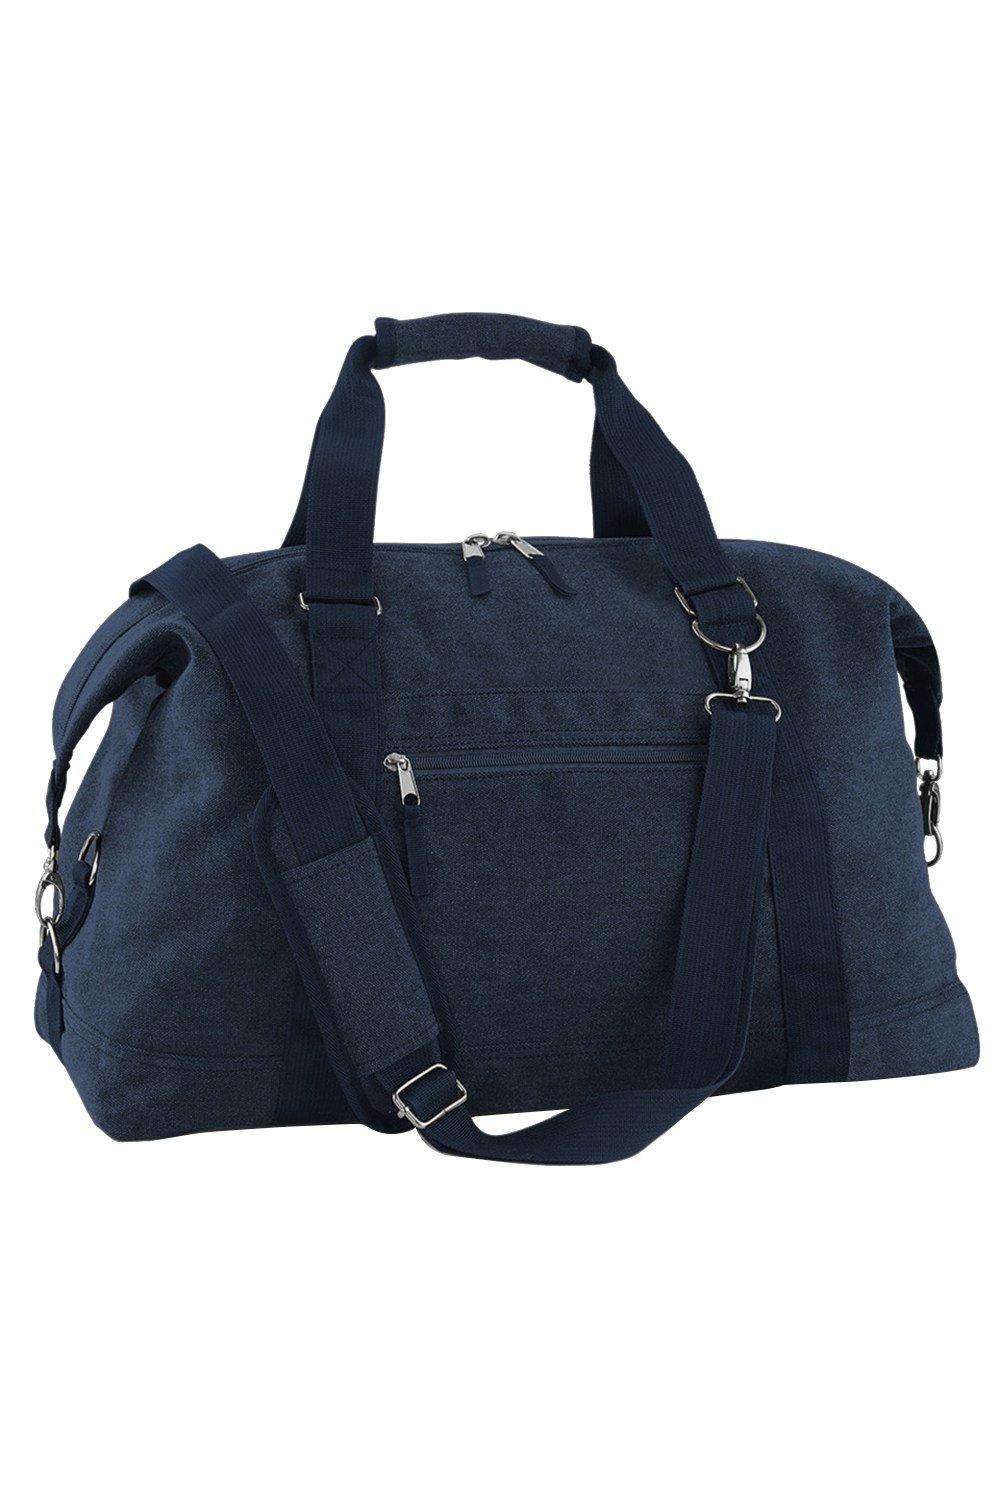 Винтажная парусиновая дорожная сумка для переноски (30 литров) Bagbase, темно-синий